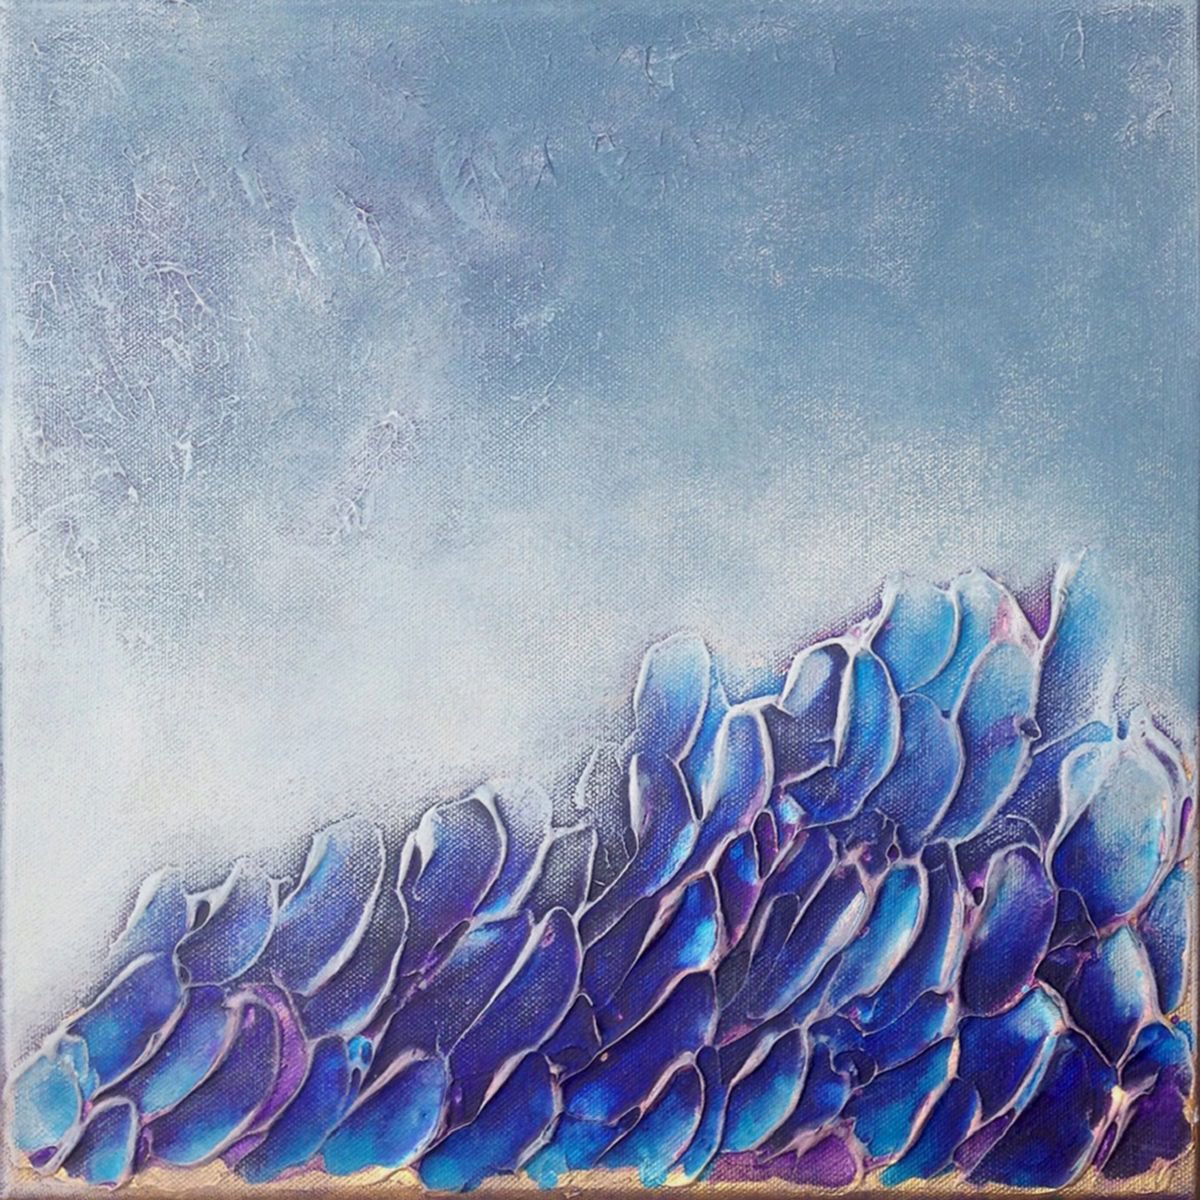 Black Coral Sky by Liz McDonough